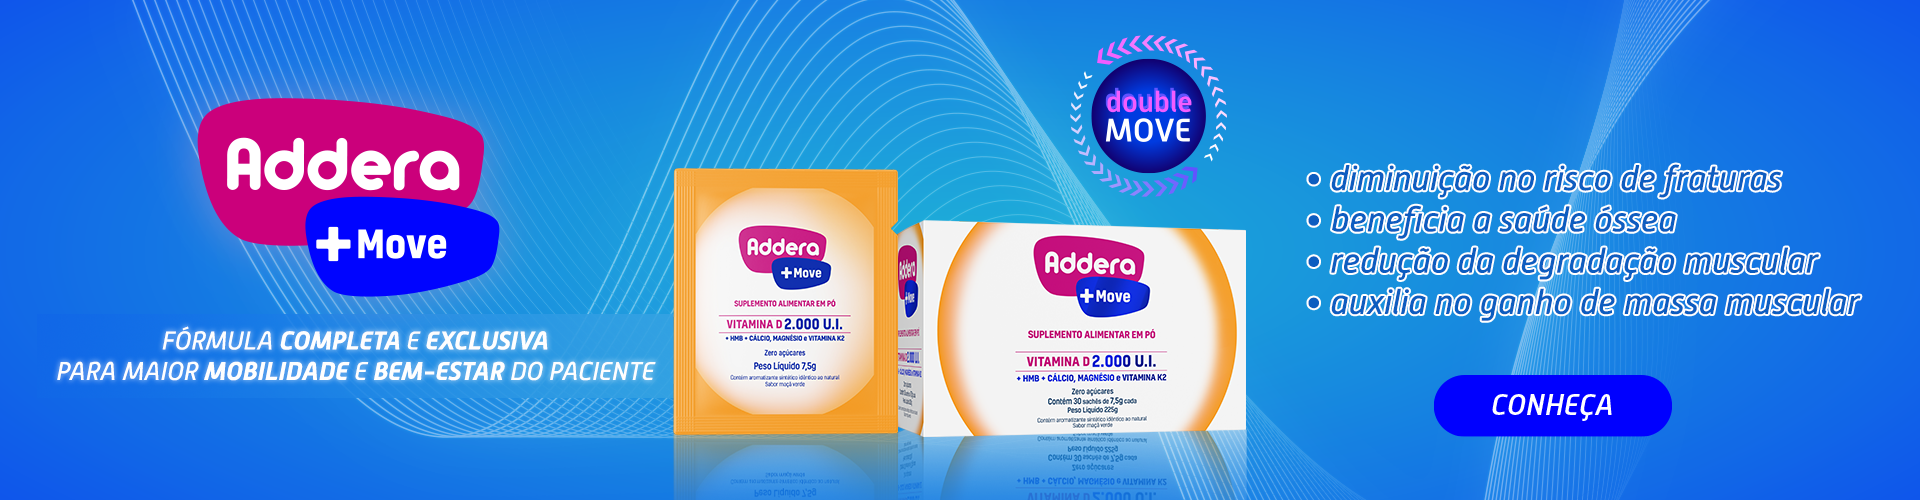 3- Addera Move